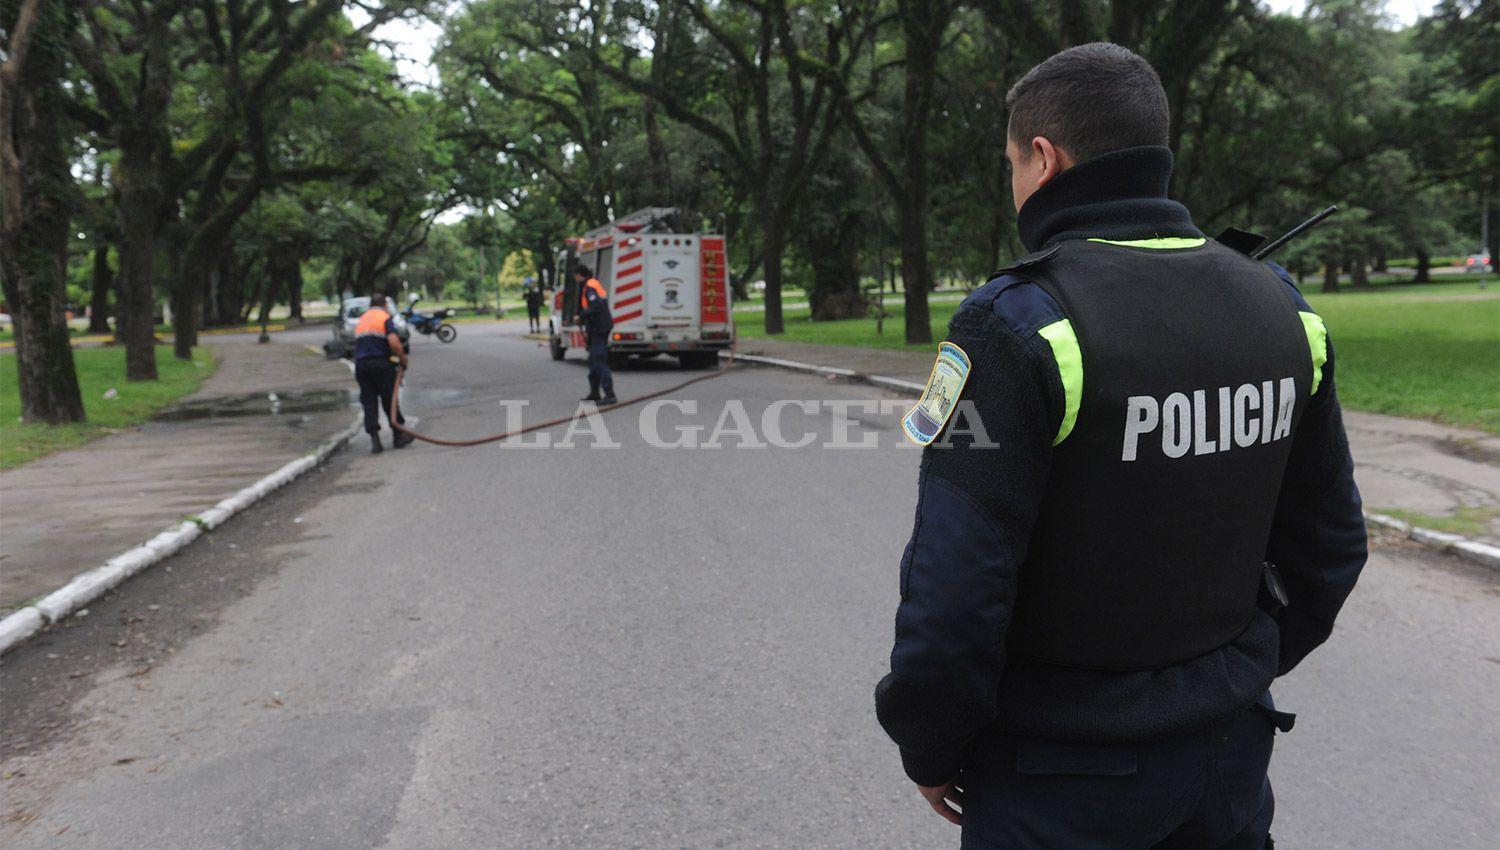 IMAGEN ILUSTRATIVA. El parque 9 de julio el día que asesinaron a los dos policías. LA GACETA/ARCHIVO